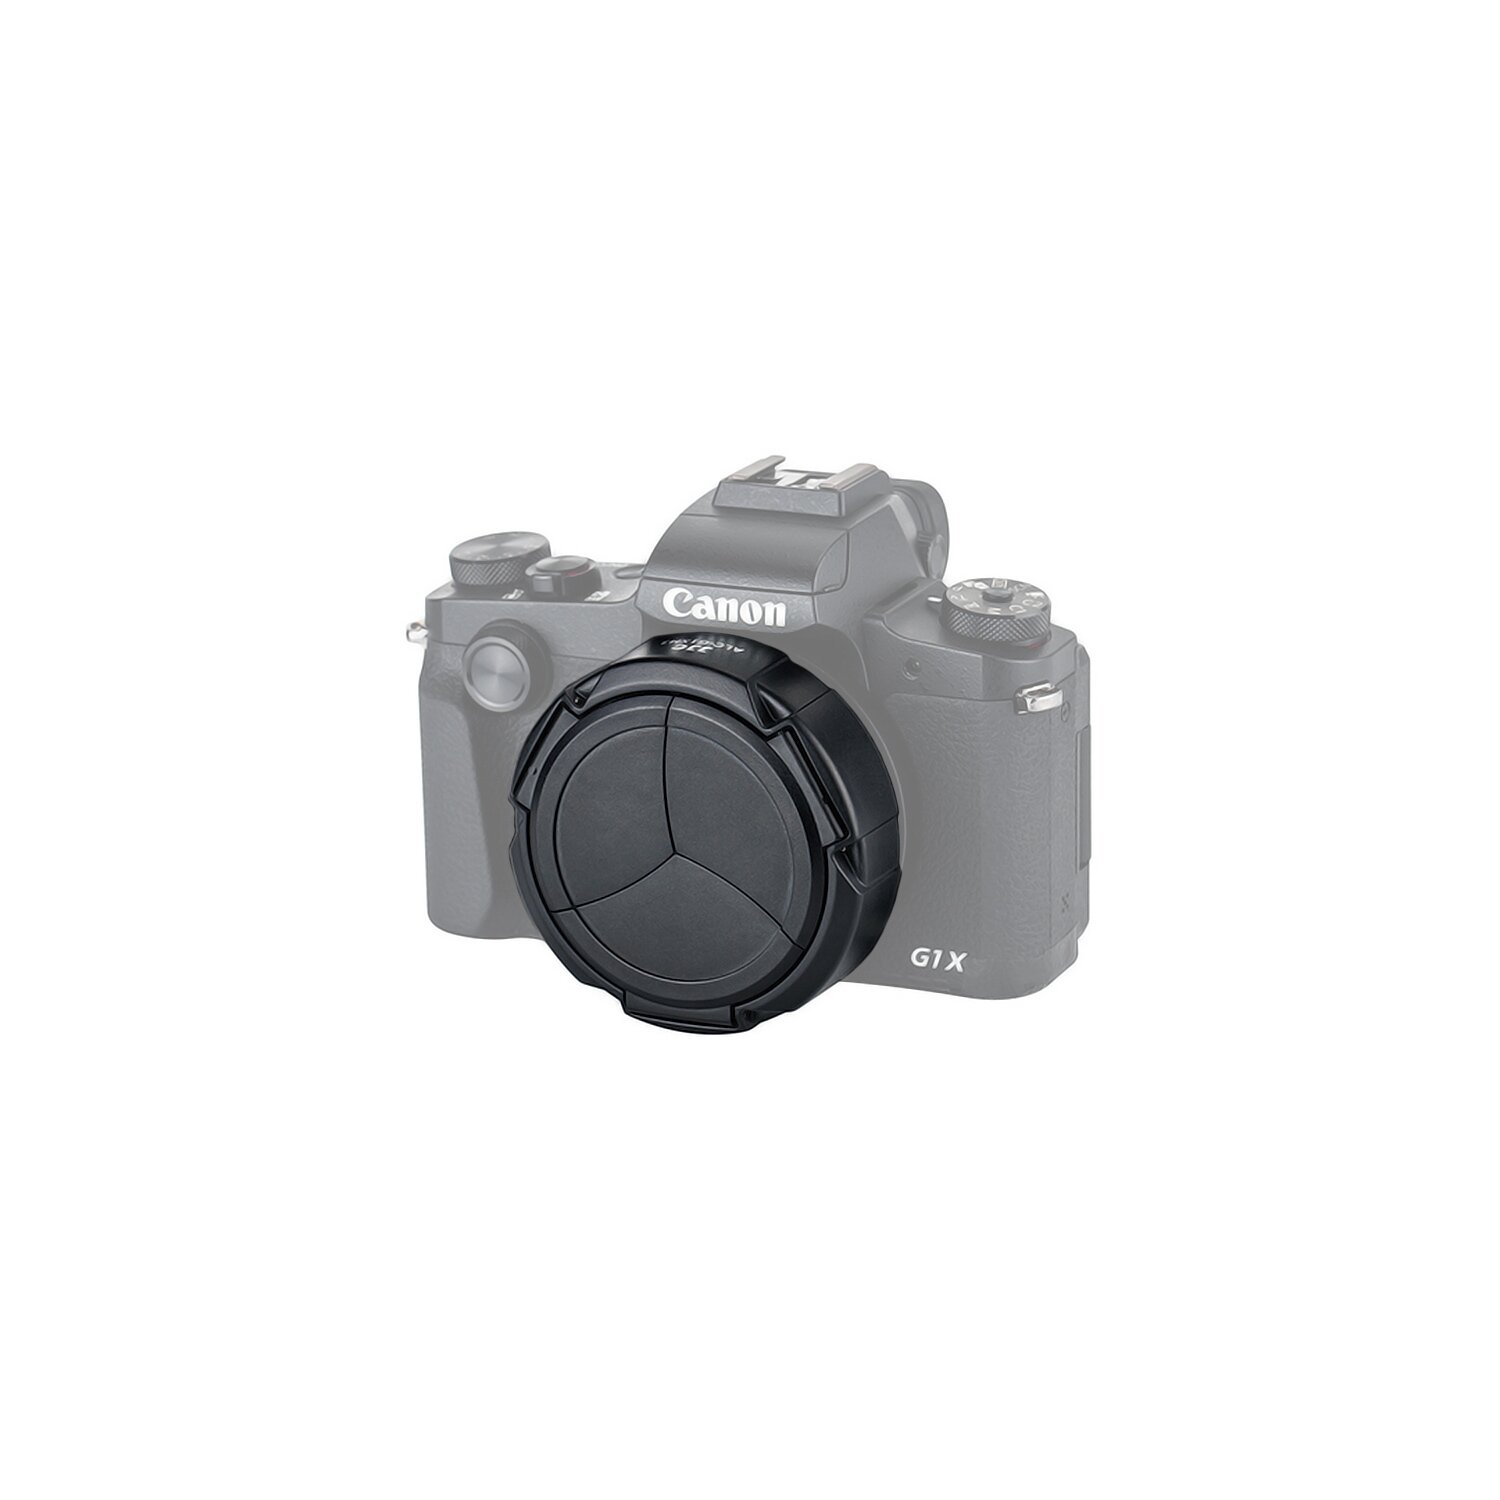 kompatibel mit Canon PowerShot G1X Mark III SCHÜTZT VOR KRATZERN SPRITZWASSER Staub & STÖßEN JJC AUTOMATIK Objektivdeckel Schutzdeckel Schutzkappe